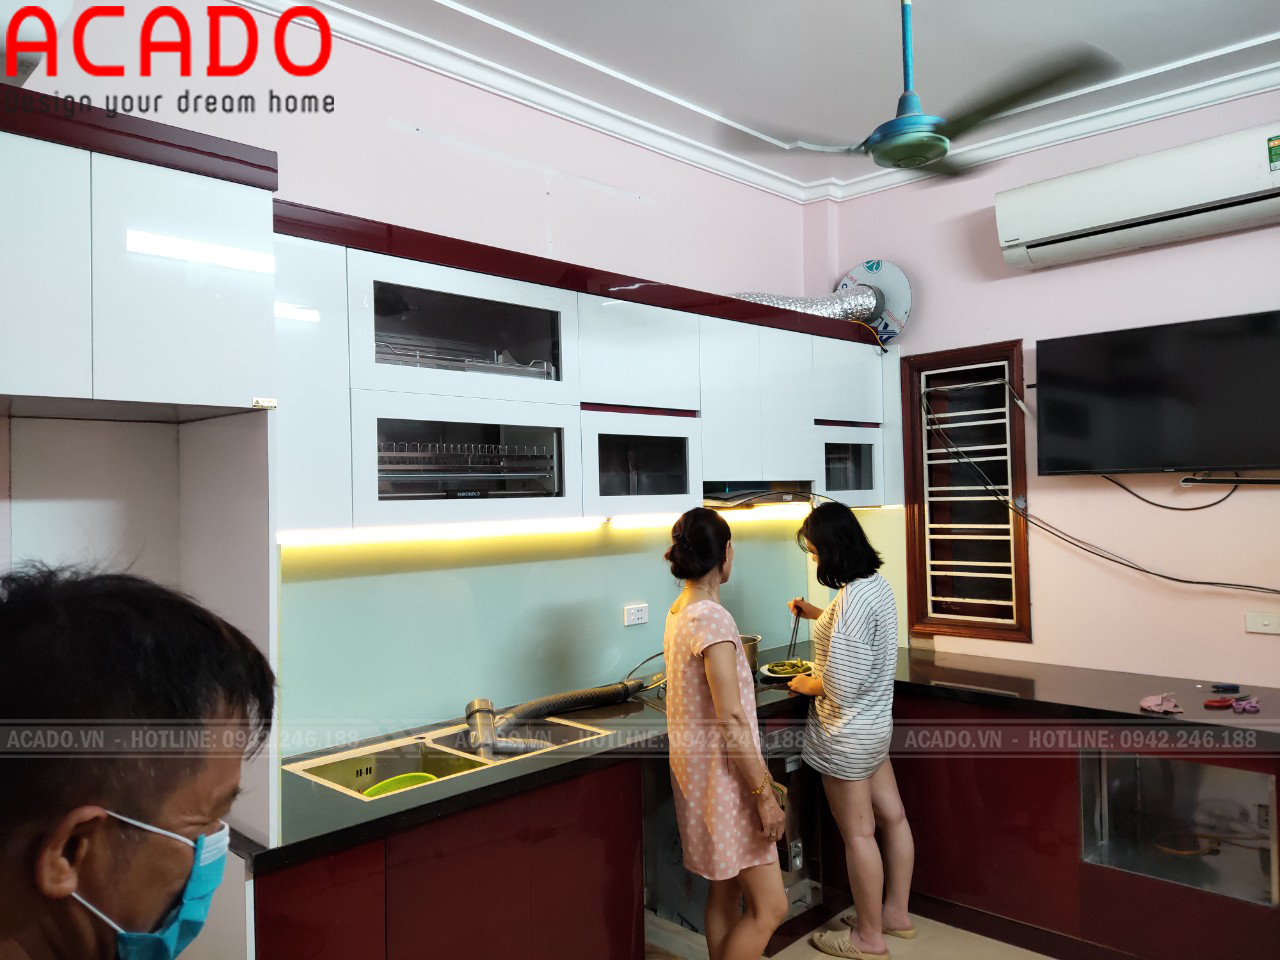 Bề mặt cánh Acrylic nhẵn hỗ trợ quá trình lau dọn, vệ sinh trong quá trình sử dụng - Đóng tủ bếp tại Yên Sở - Hoàng Mai